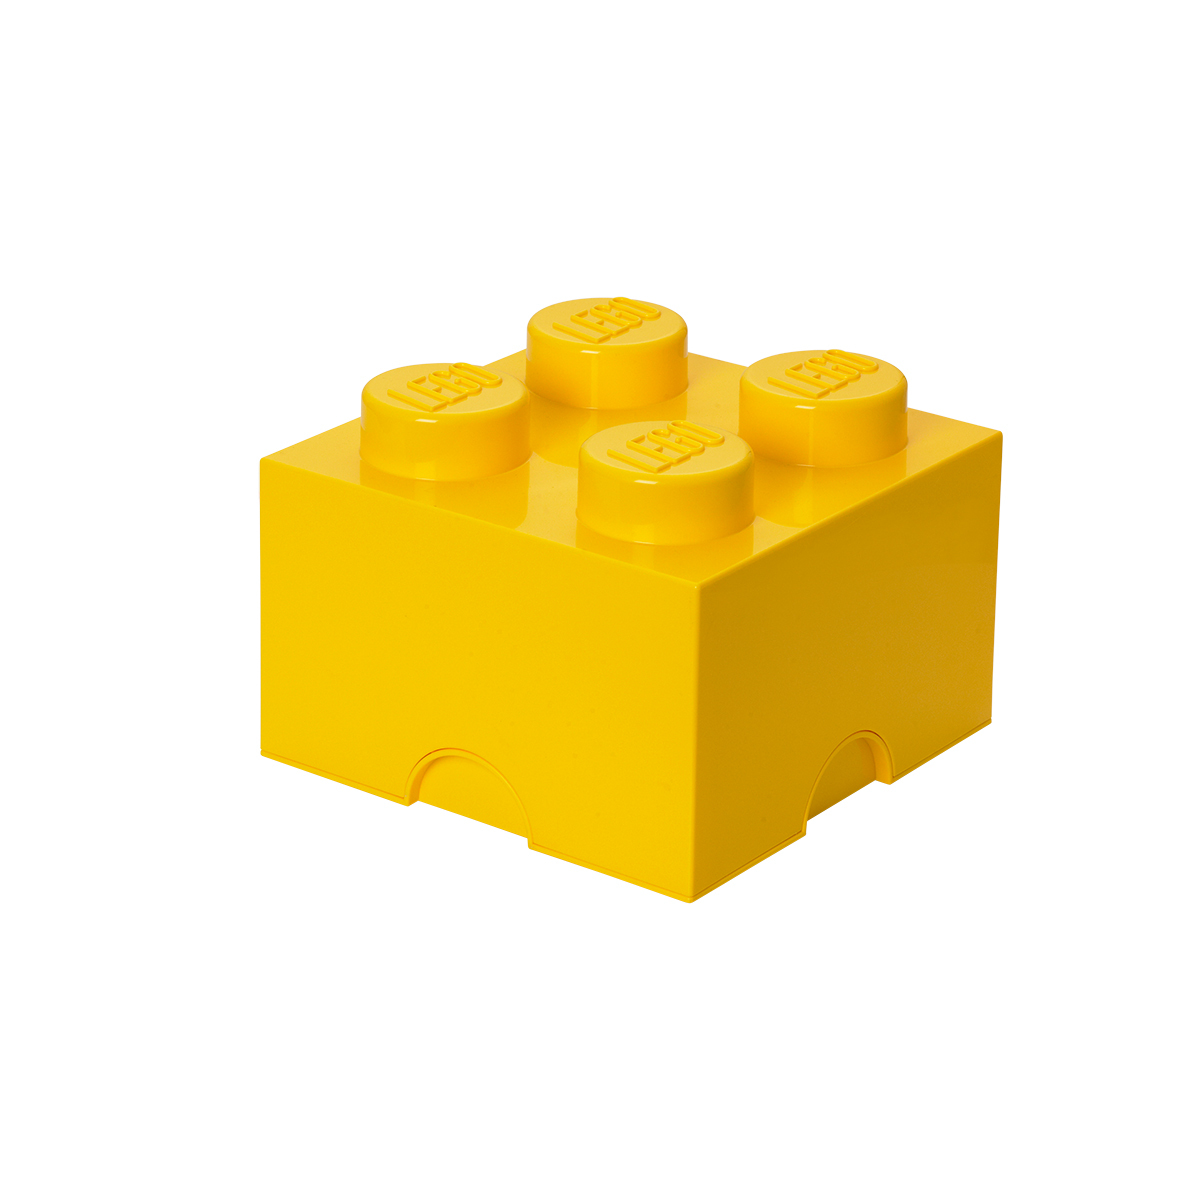 おもちゃ 収納 おもちゃ箱 レゴブロック 収納ボックス 幅25 レゴ